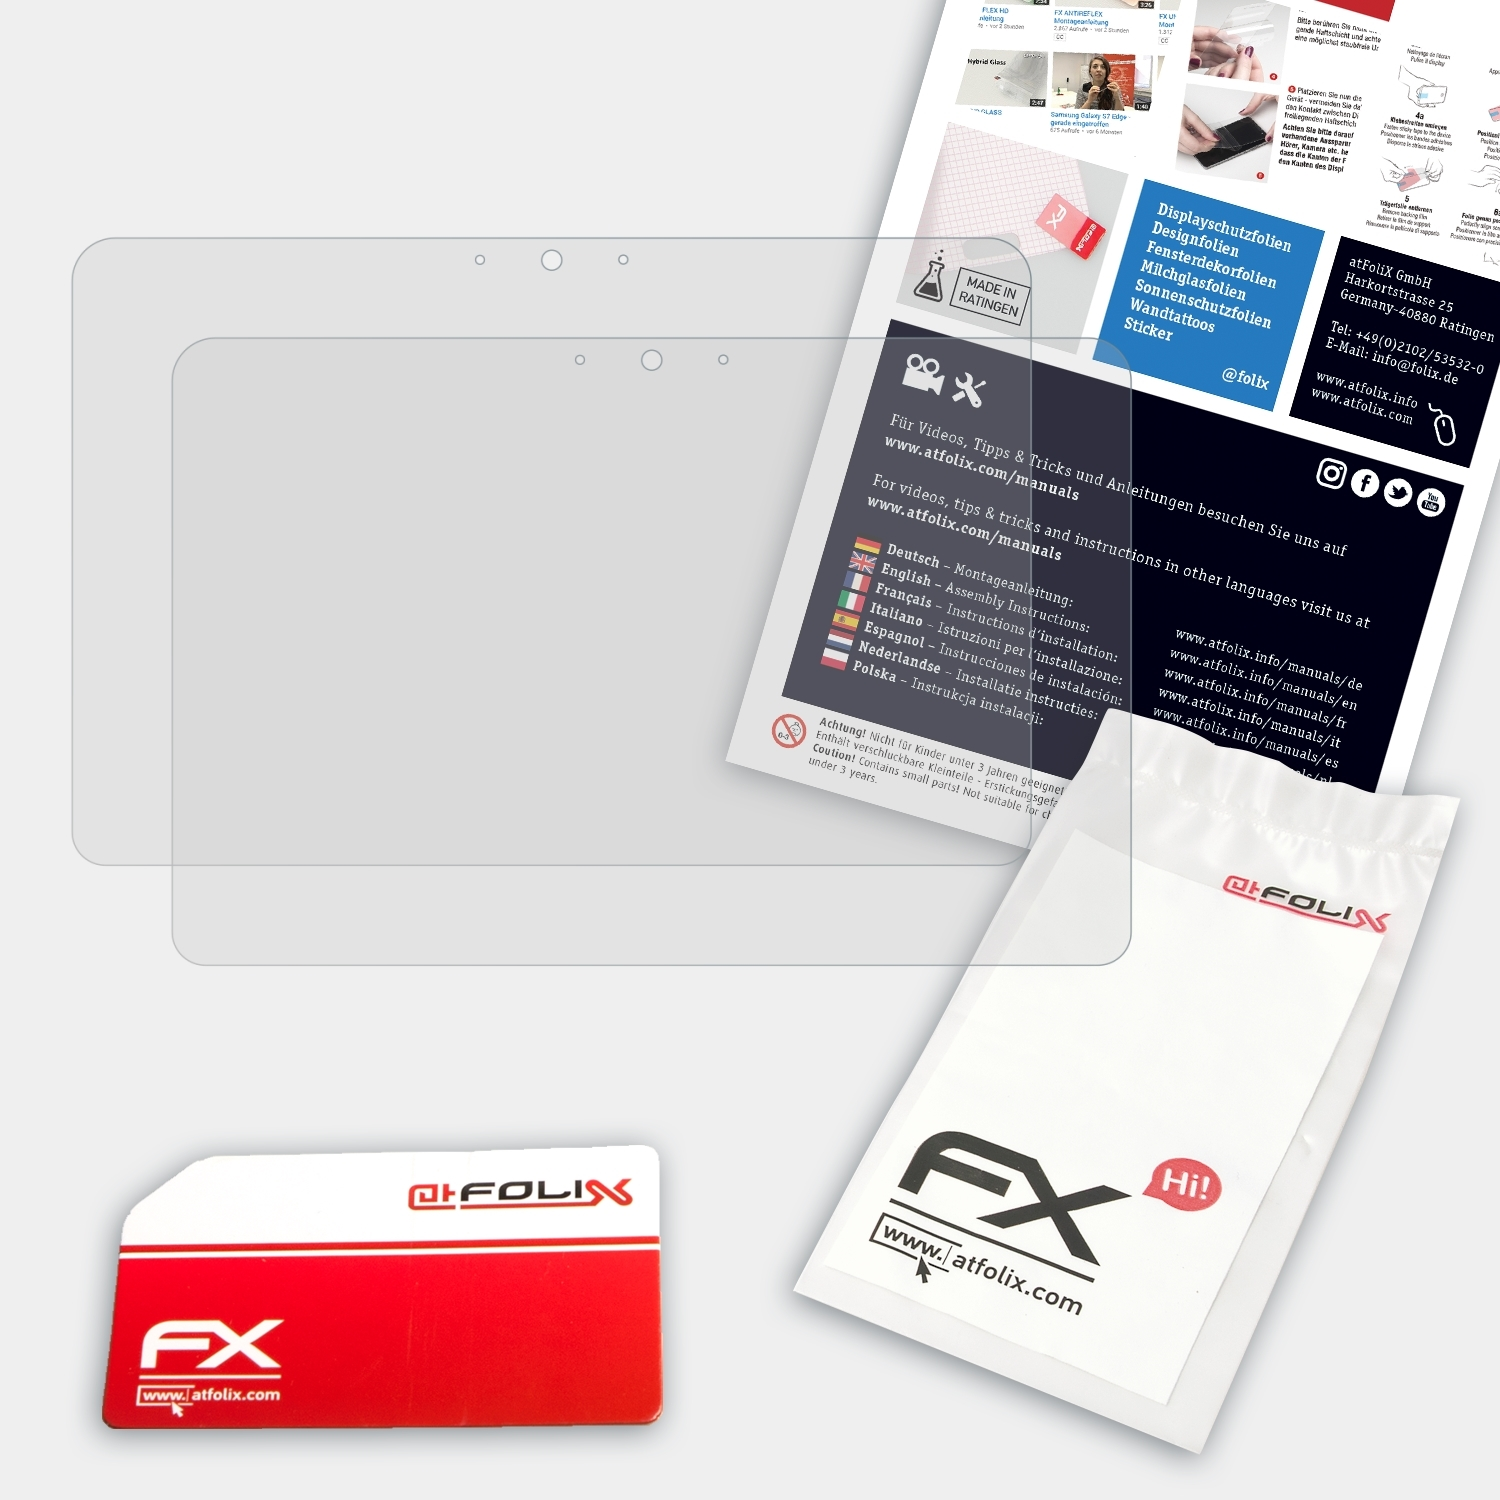 ATFOLIX 2x G3) HP Elitebook FX-Antireflex Displayschutz(für 1040